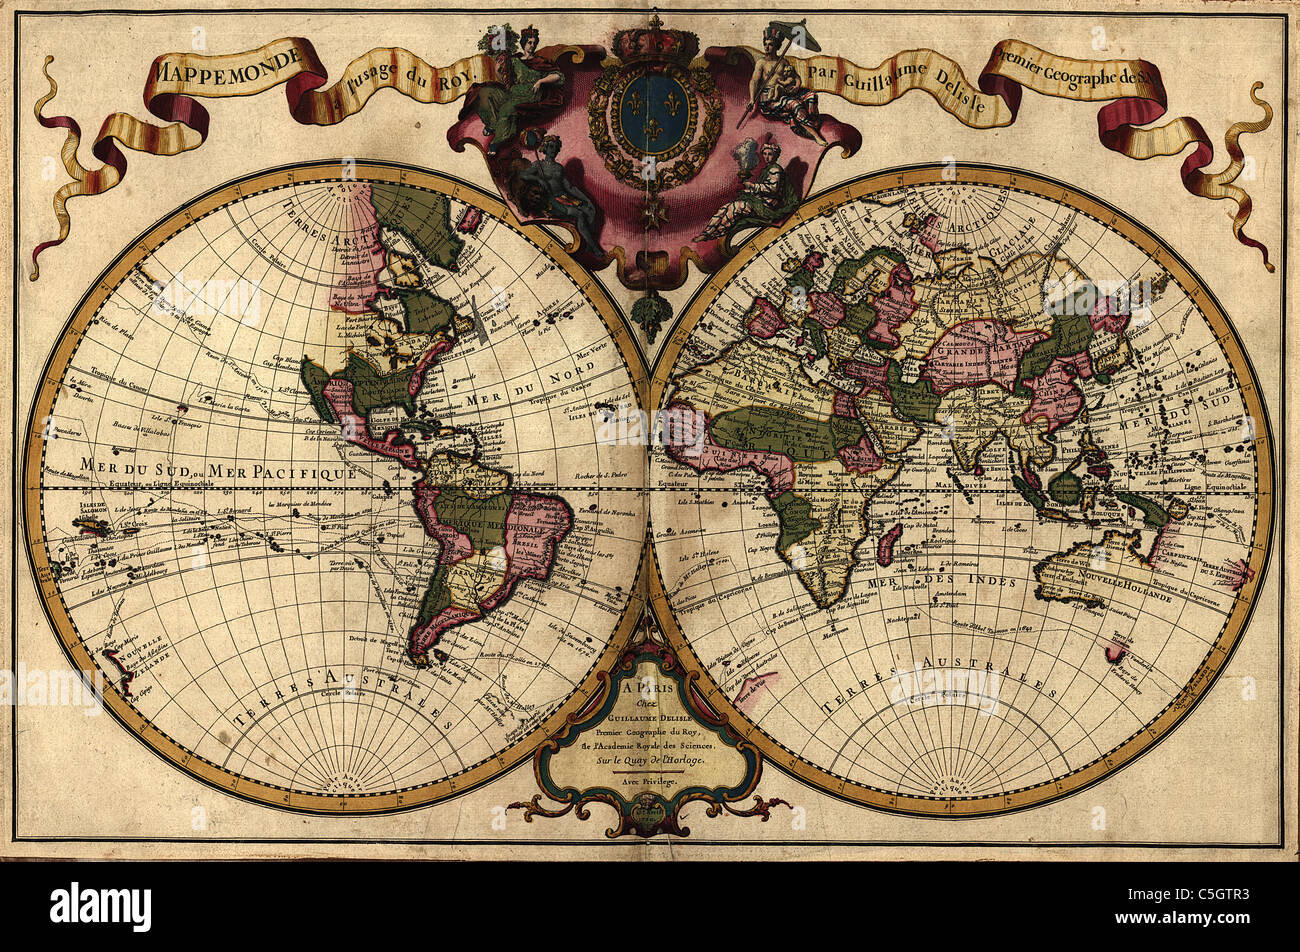 Mappemonde eine Usage du Roy - antike Weltkarte von Guillaume de l ' Isle, 1720 Stockfoto